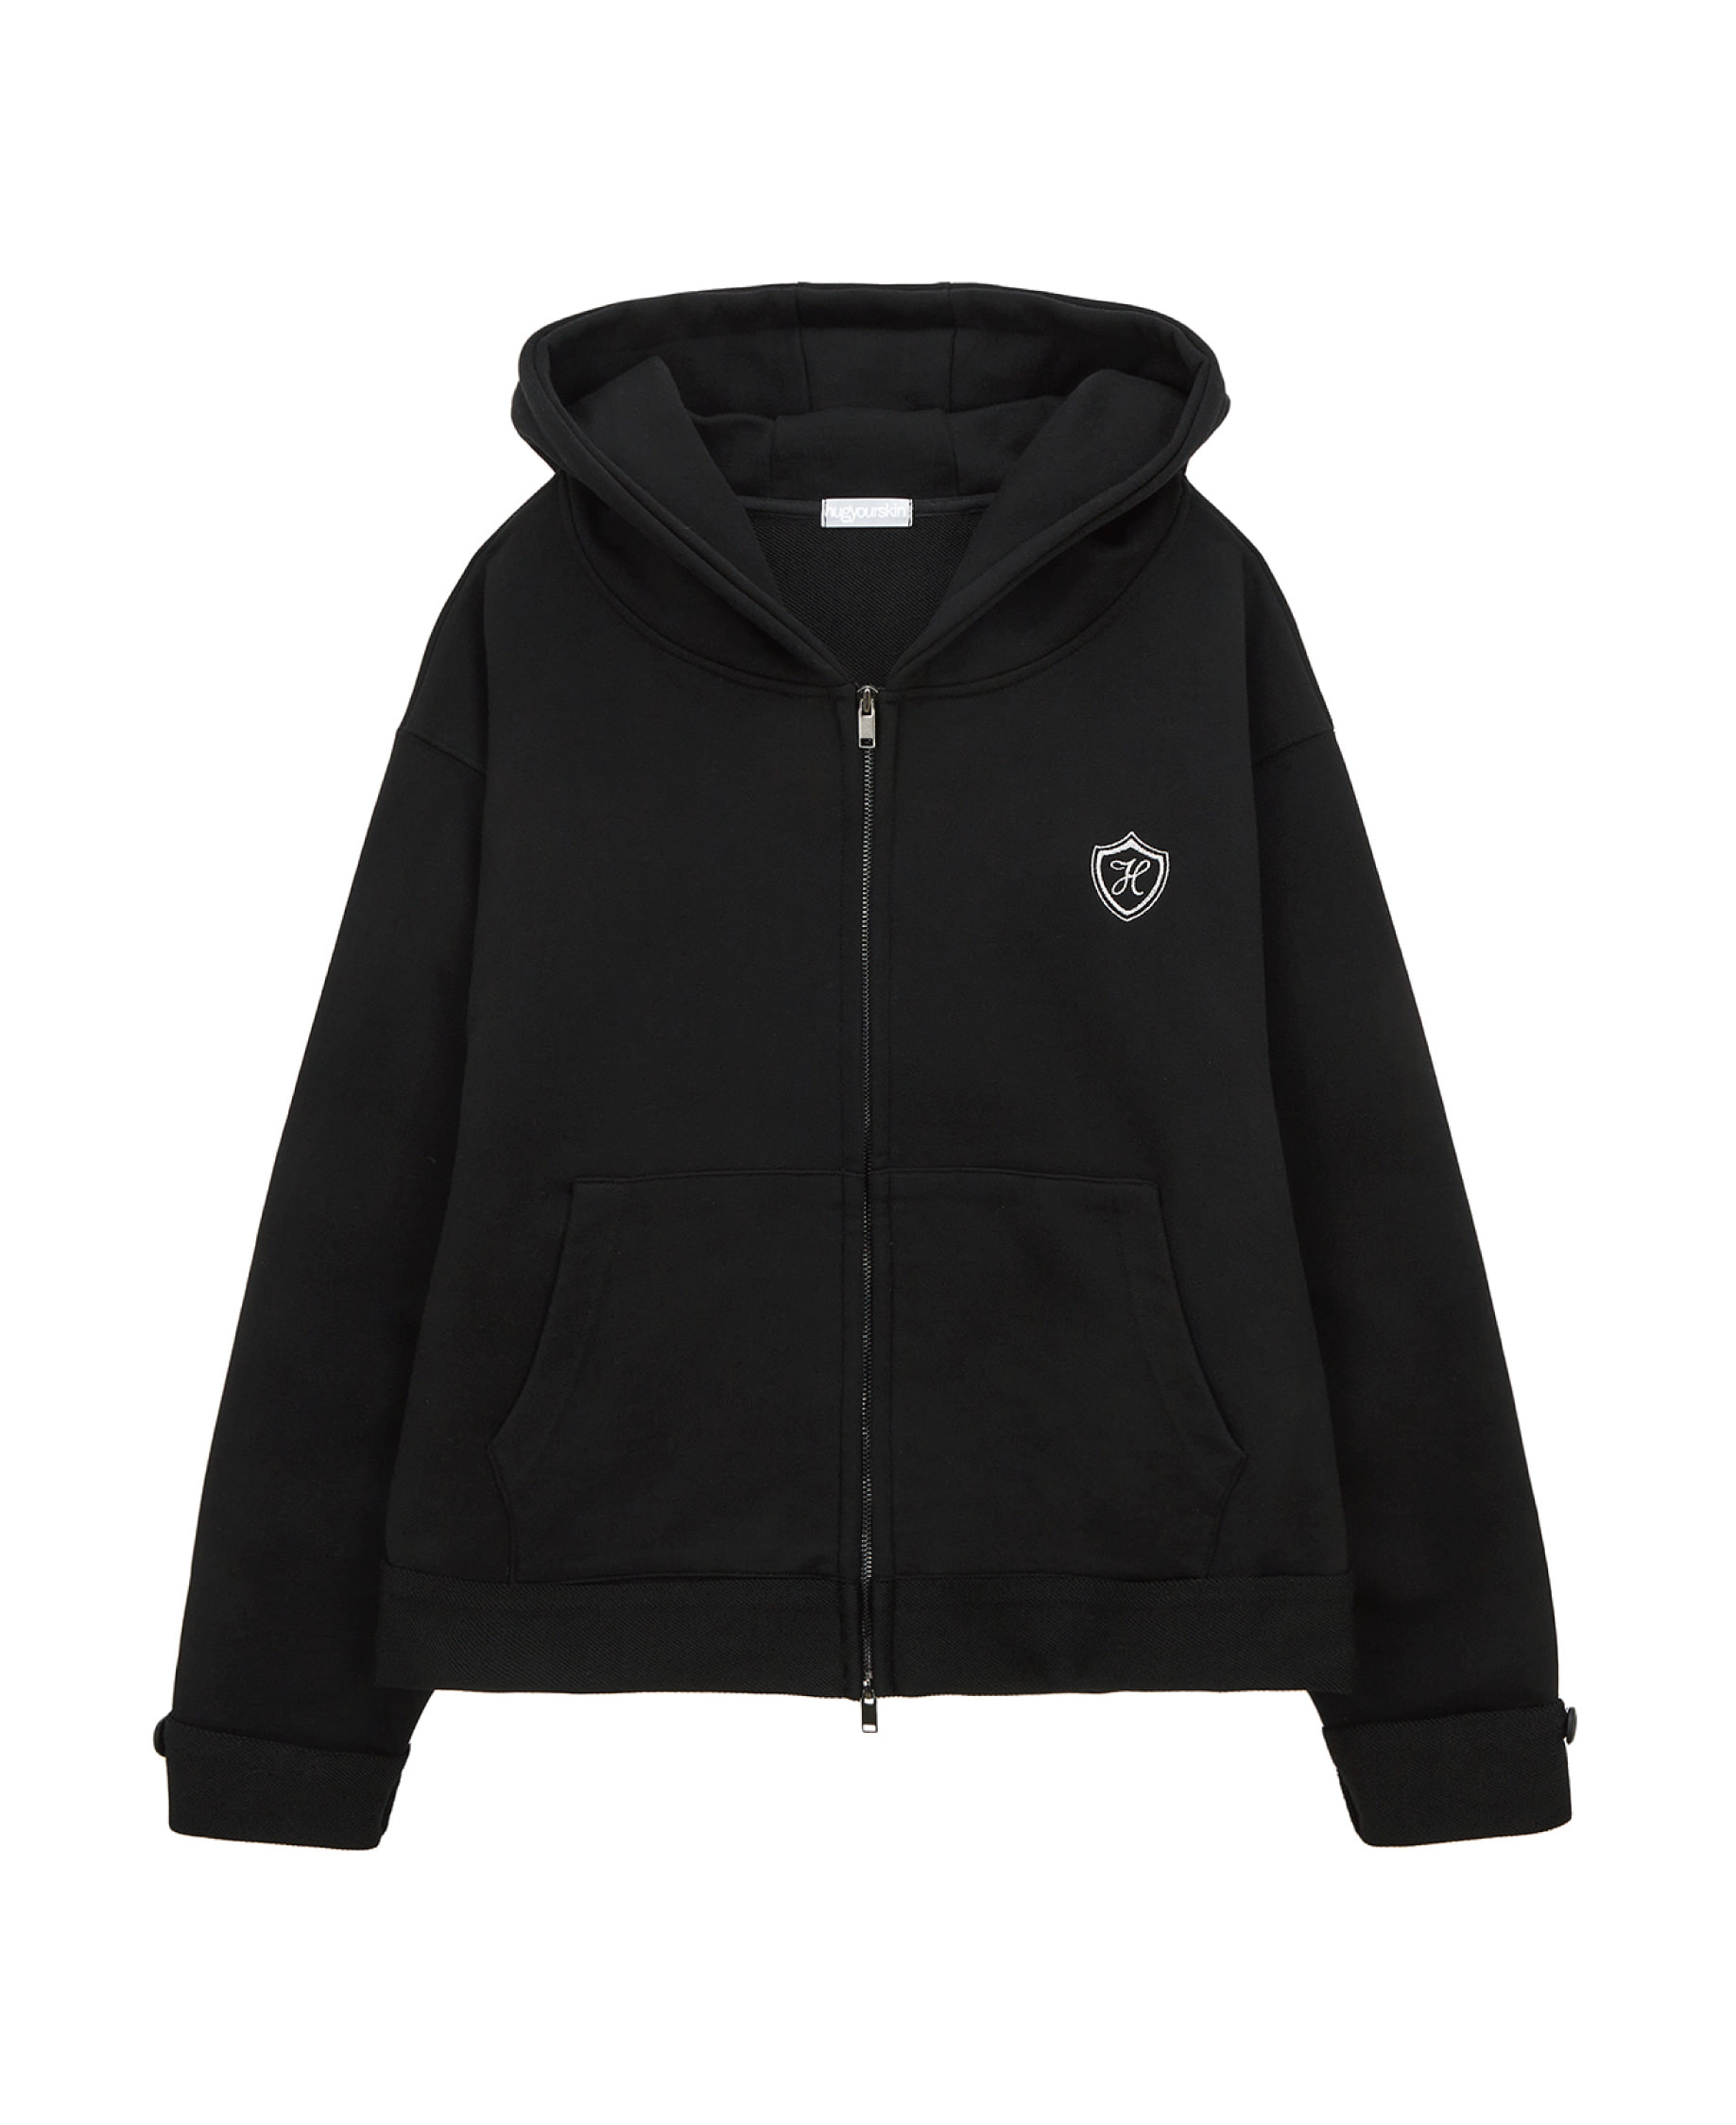 School hoodie zip-up (black)